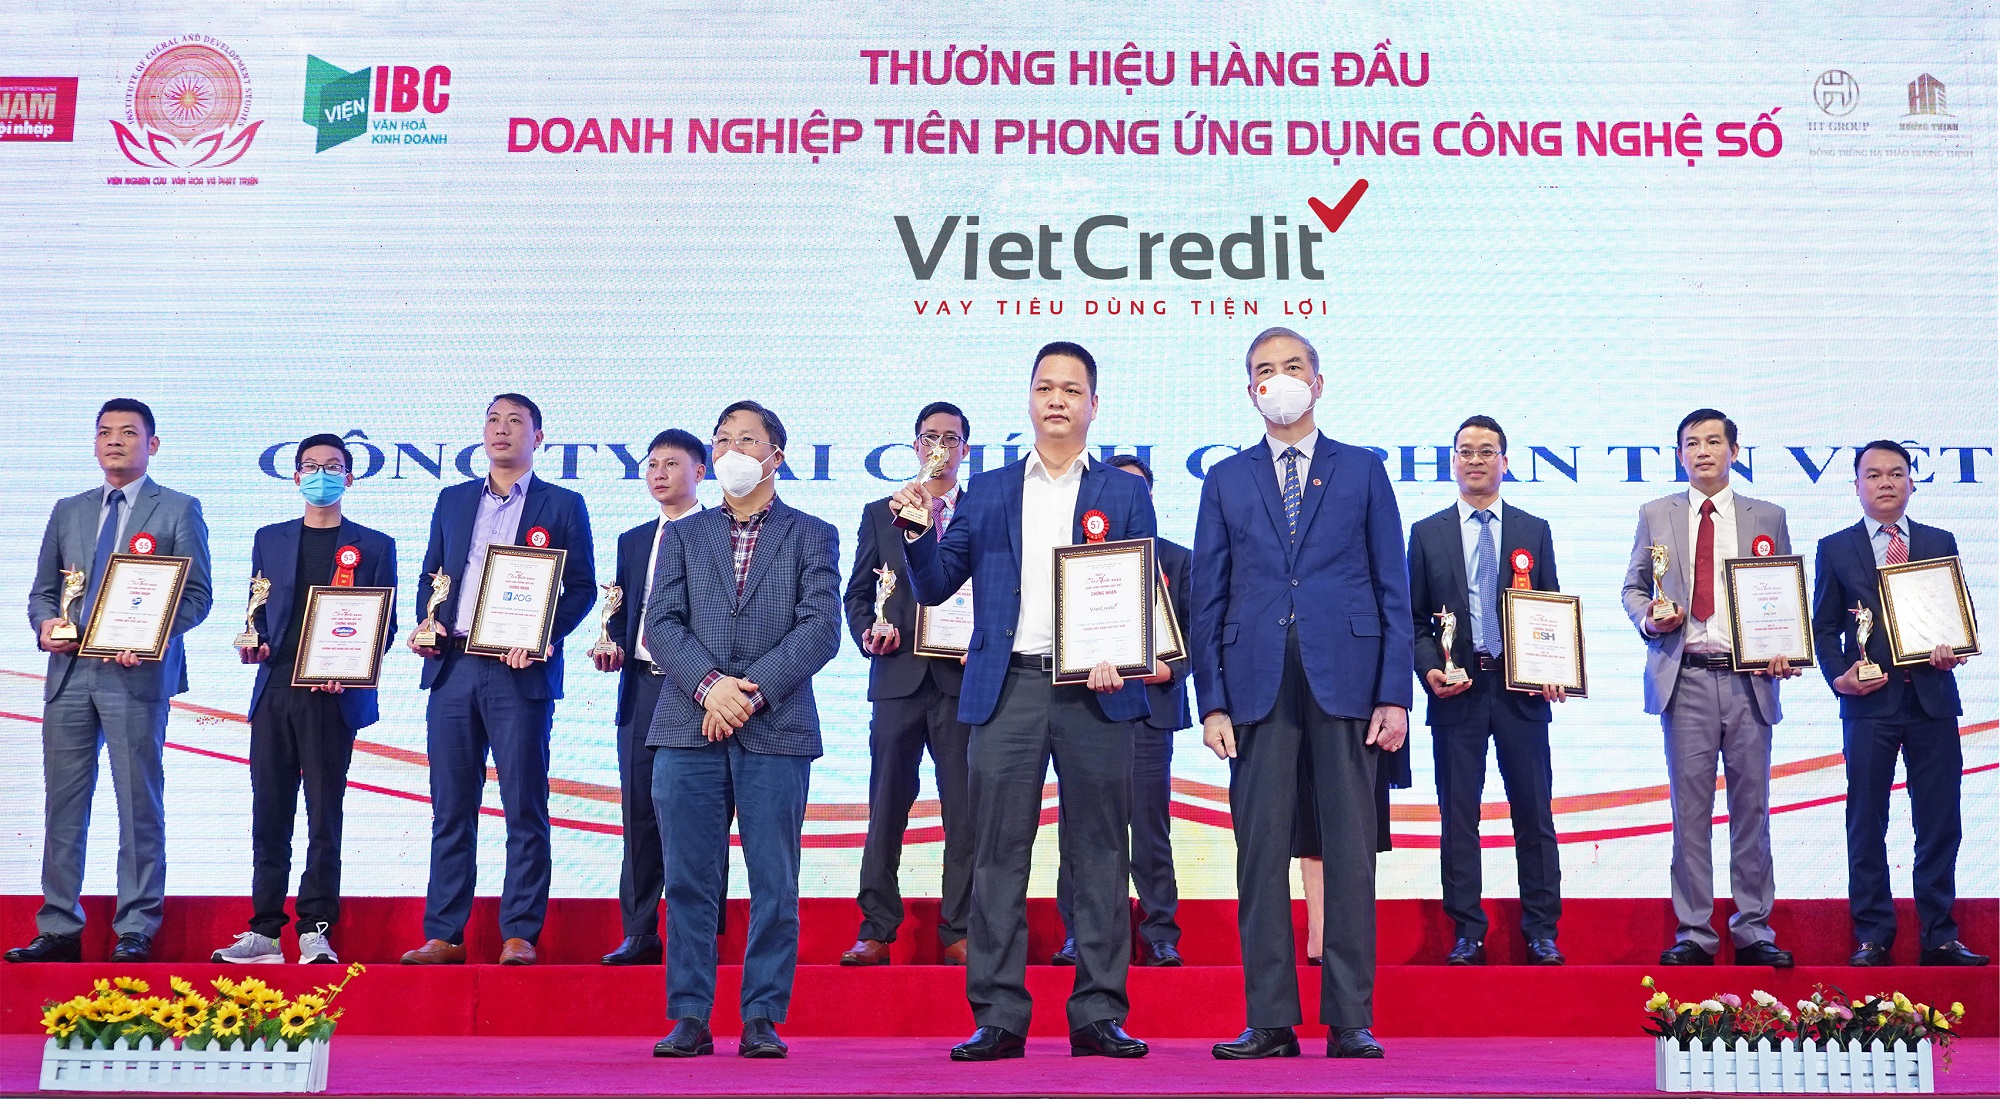 VietCredit vinh dự vào Top 10 thương hiệu hàng đầu Việt Nam